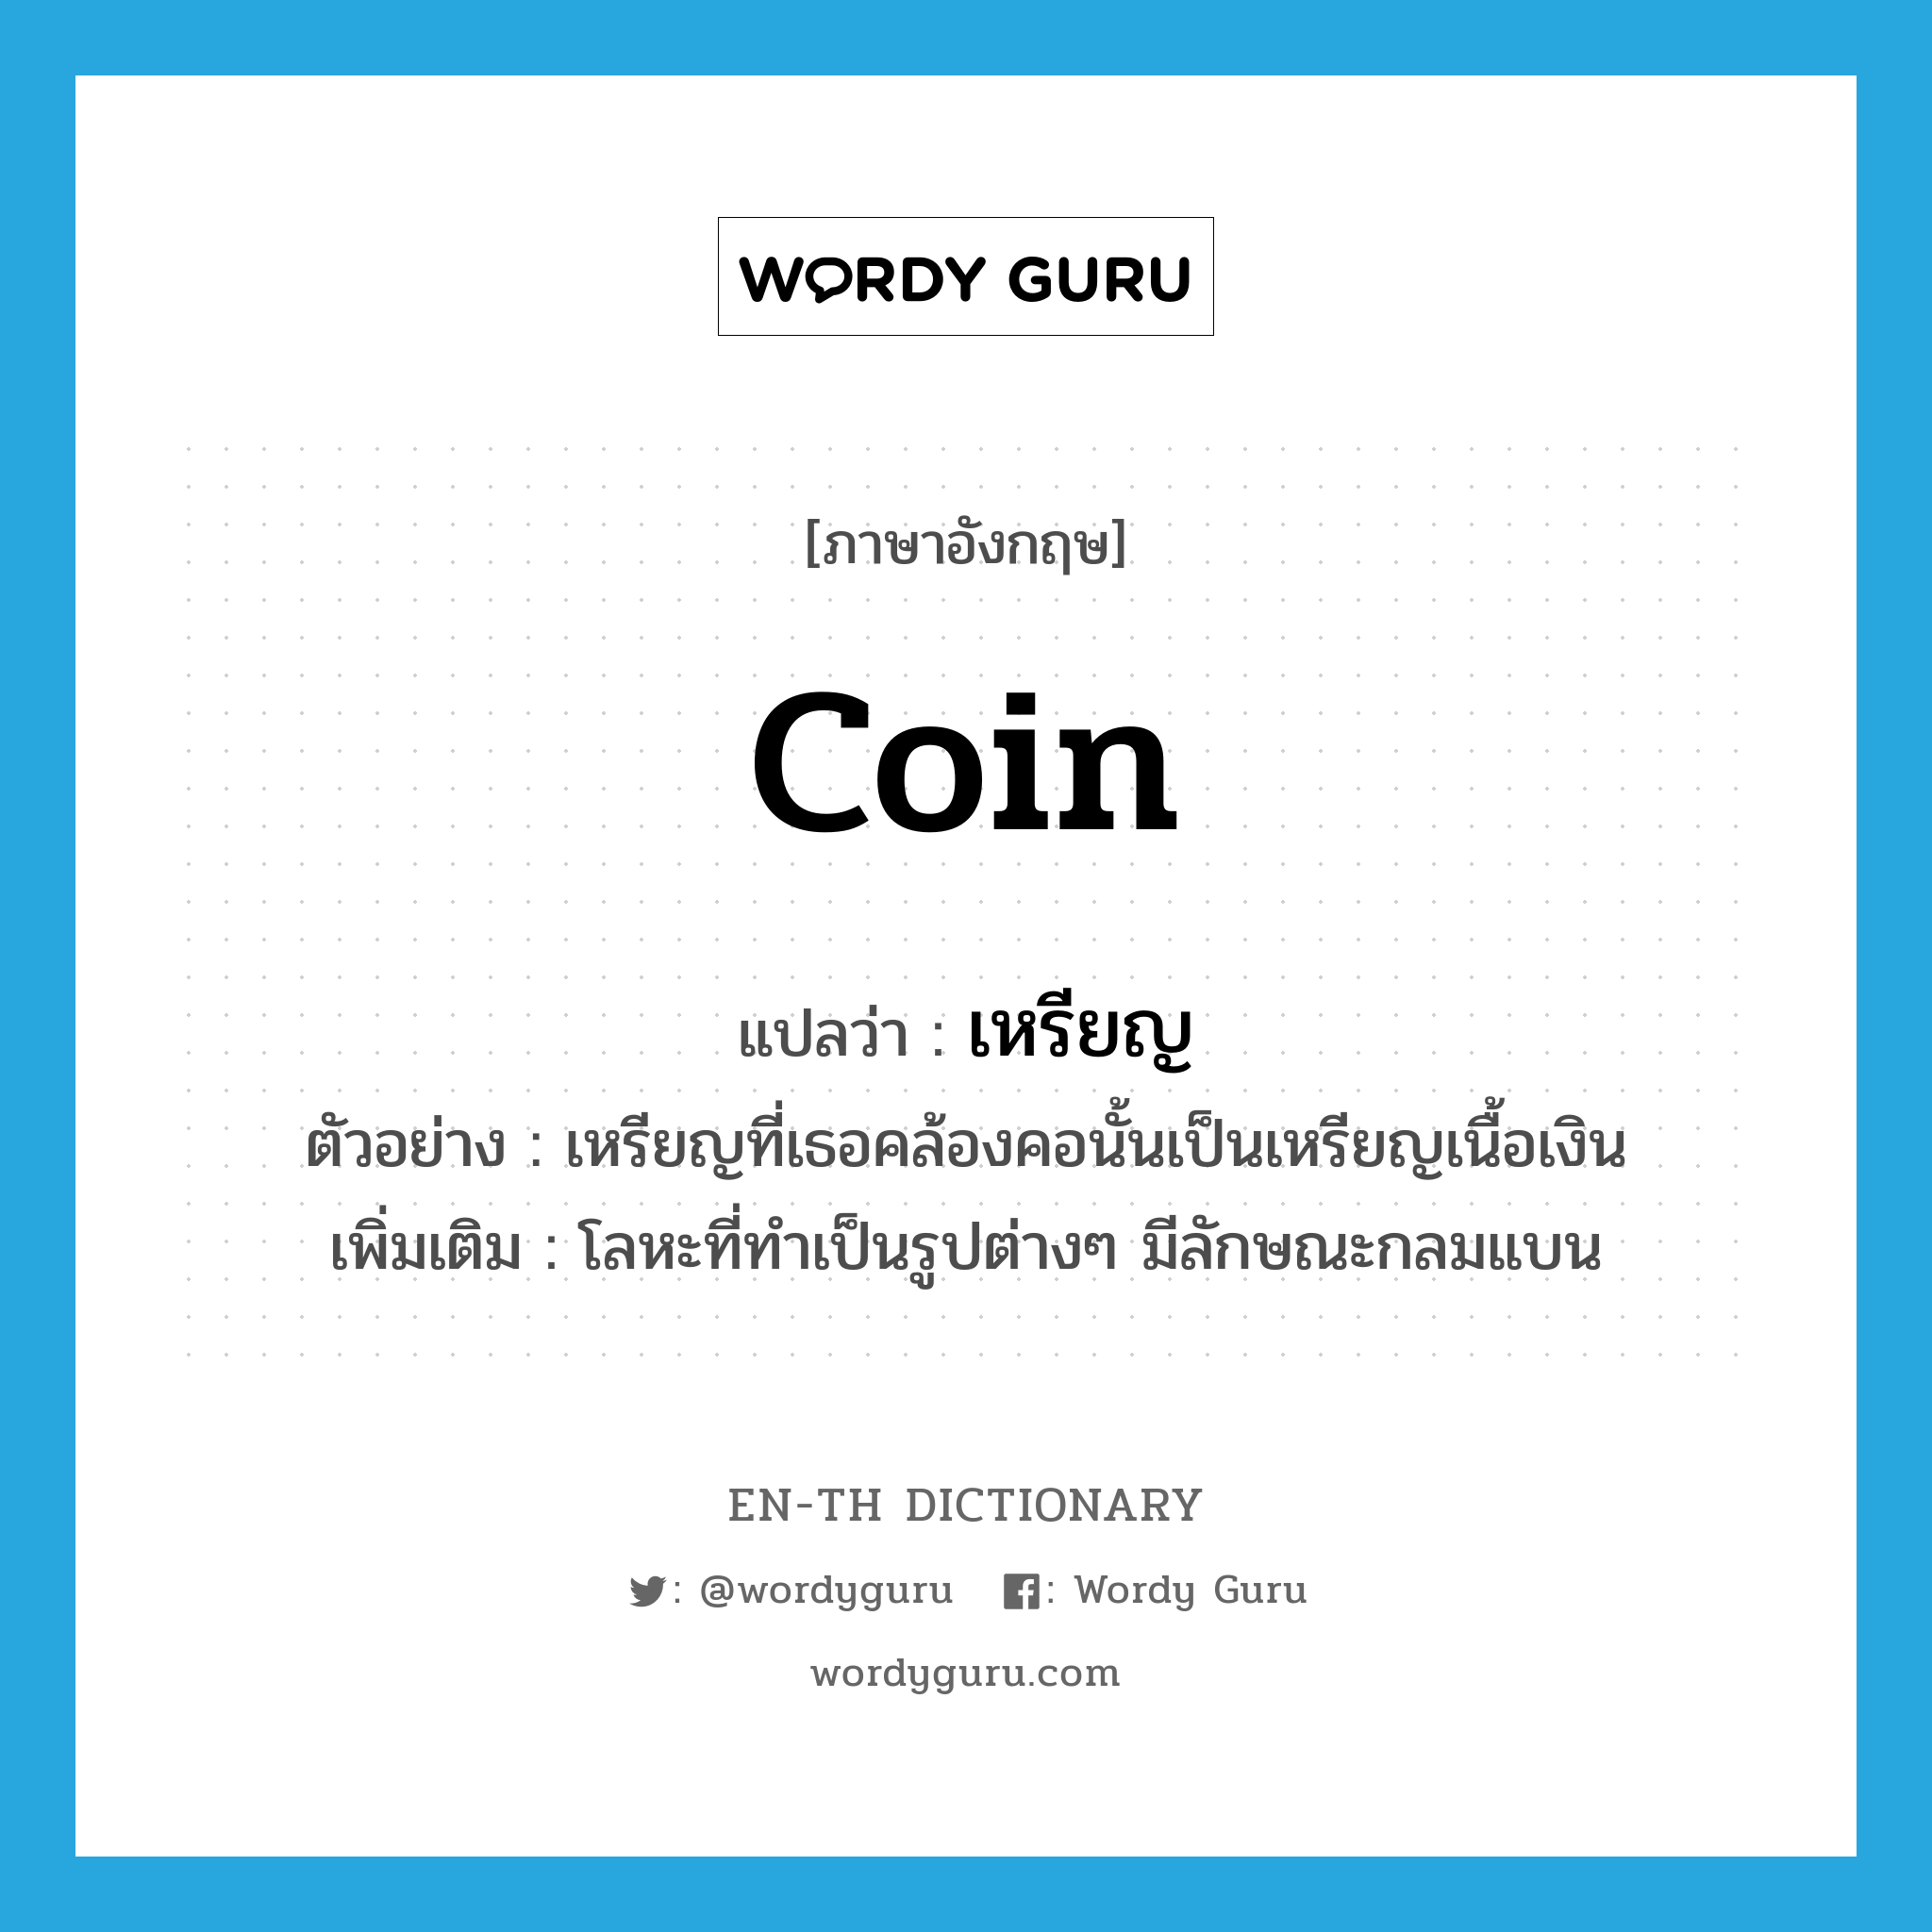 เหรียญ ภาษาอังกฤษ?, คำศัพท์ภาษาอังกฤษ เหรียญ แปลว่า coin ประเภท N ตัวอย่าง เหรียญที่เธอคล้องคอนั้นเป็นเหรียญเนื้อเงิน เพิ่มเติม โลหะที่ทำเป็นรูปต่างๆ มีลักษณะกลมแบน หมวด N